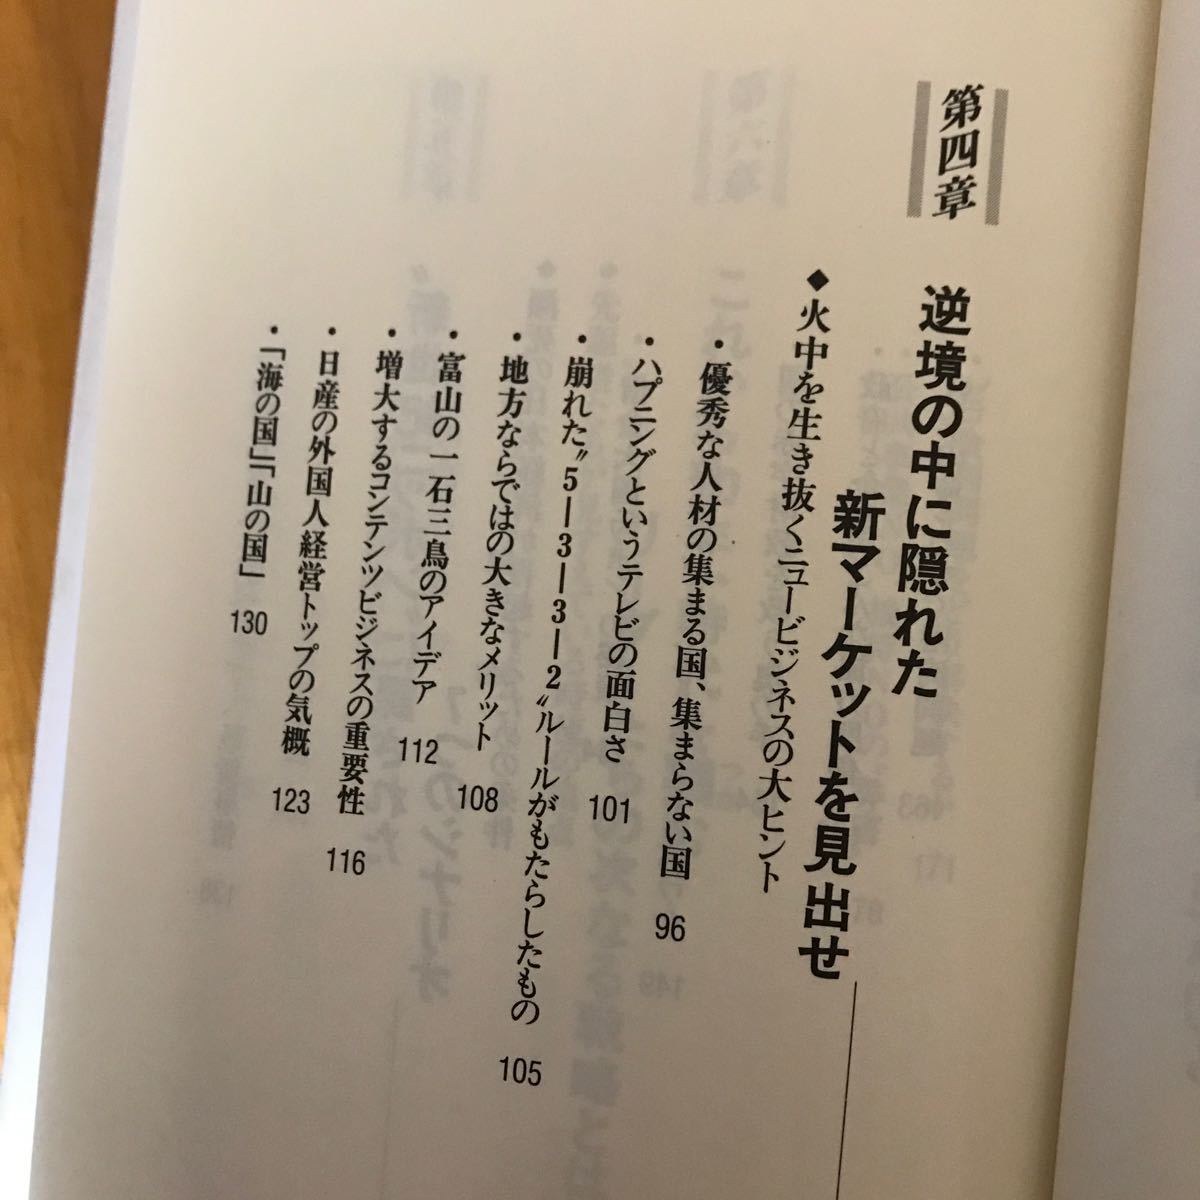 7a 竹村健一　2冊セット 世界の動きこれだけ知っていればいい〈2001年版〉 「変わる日本」で必要とされる人〈2002年版〉単行本_画像10